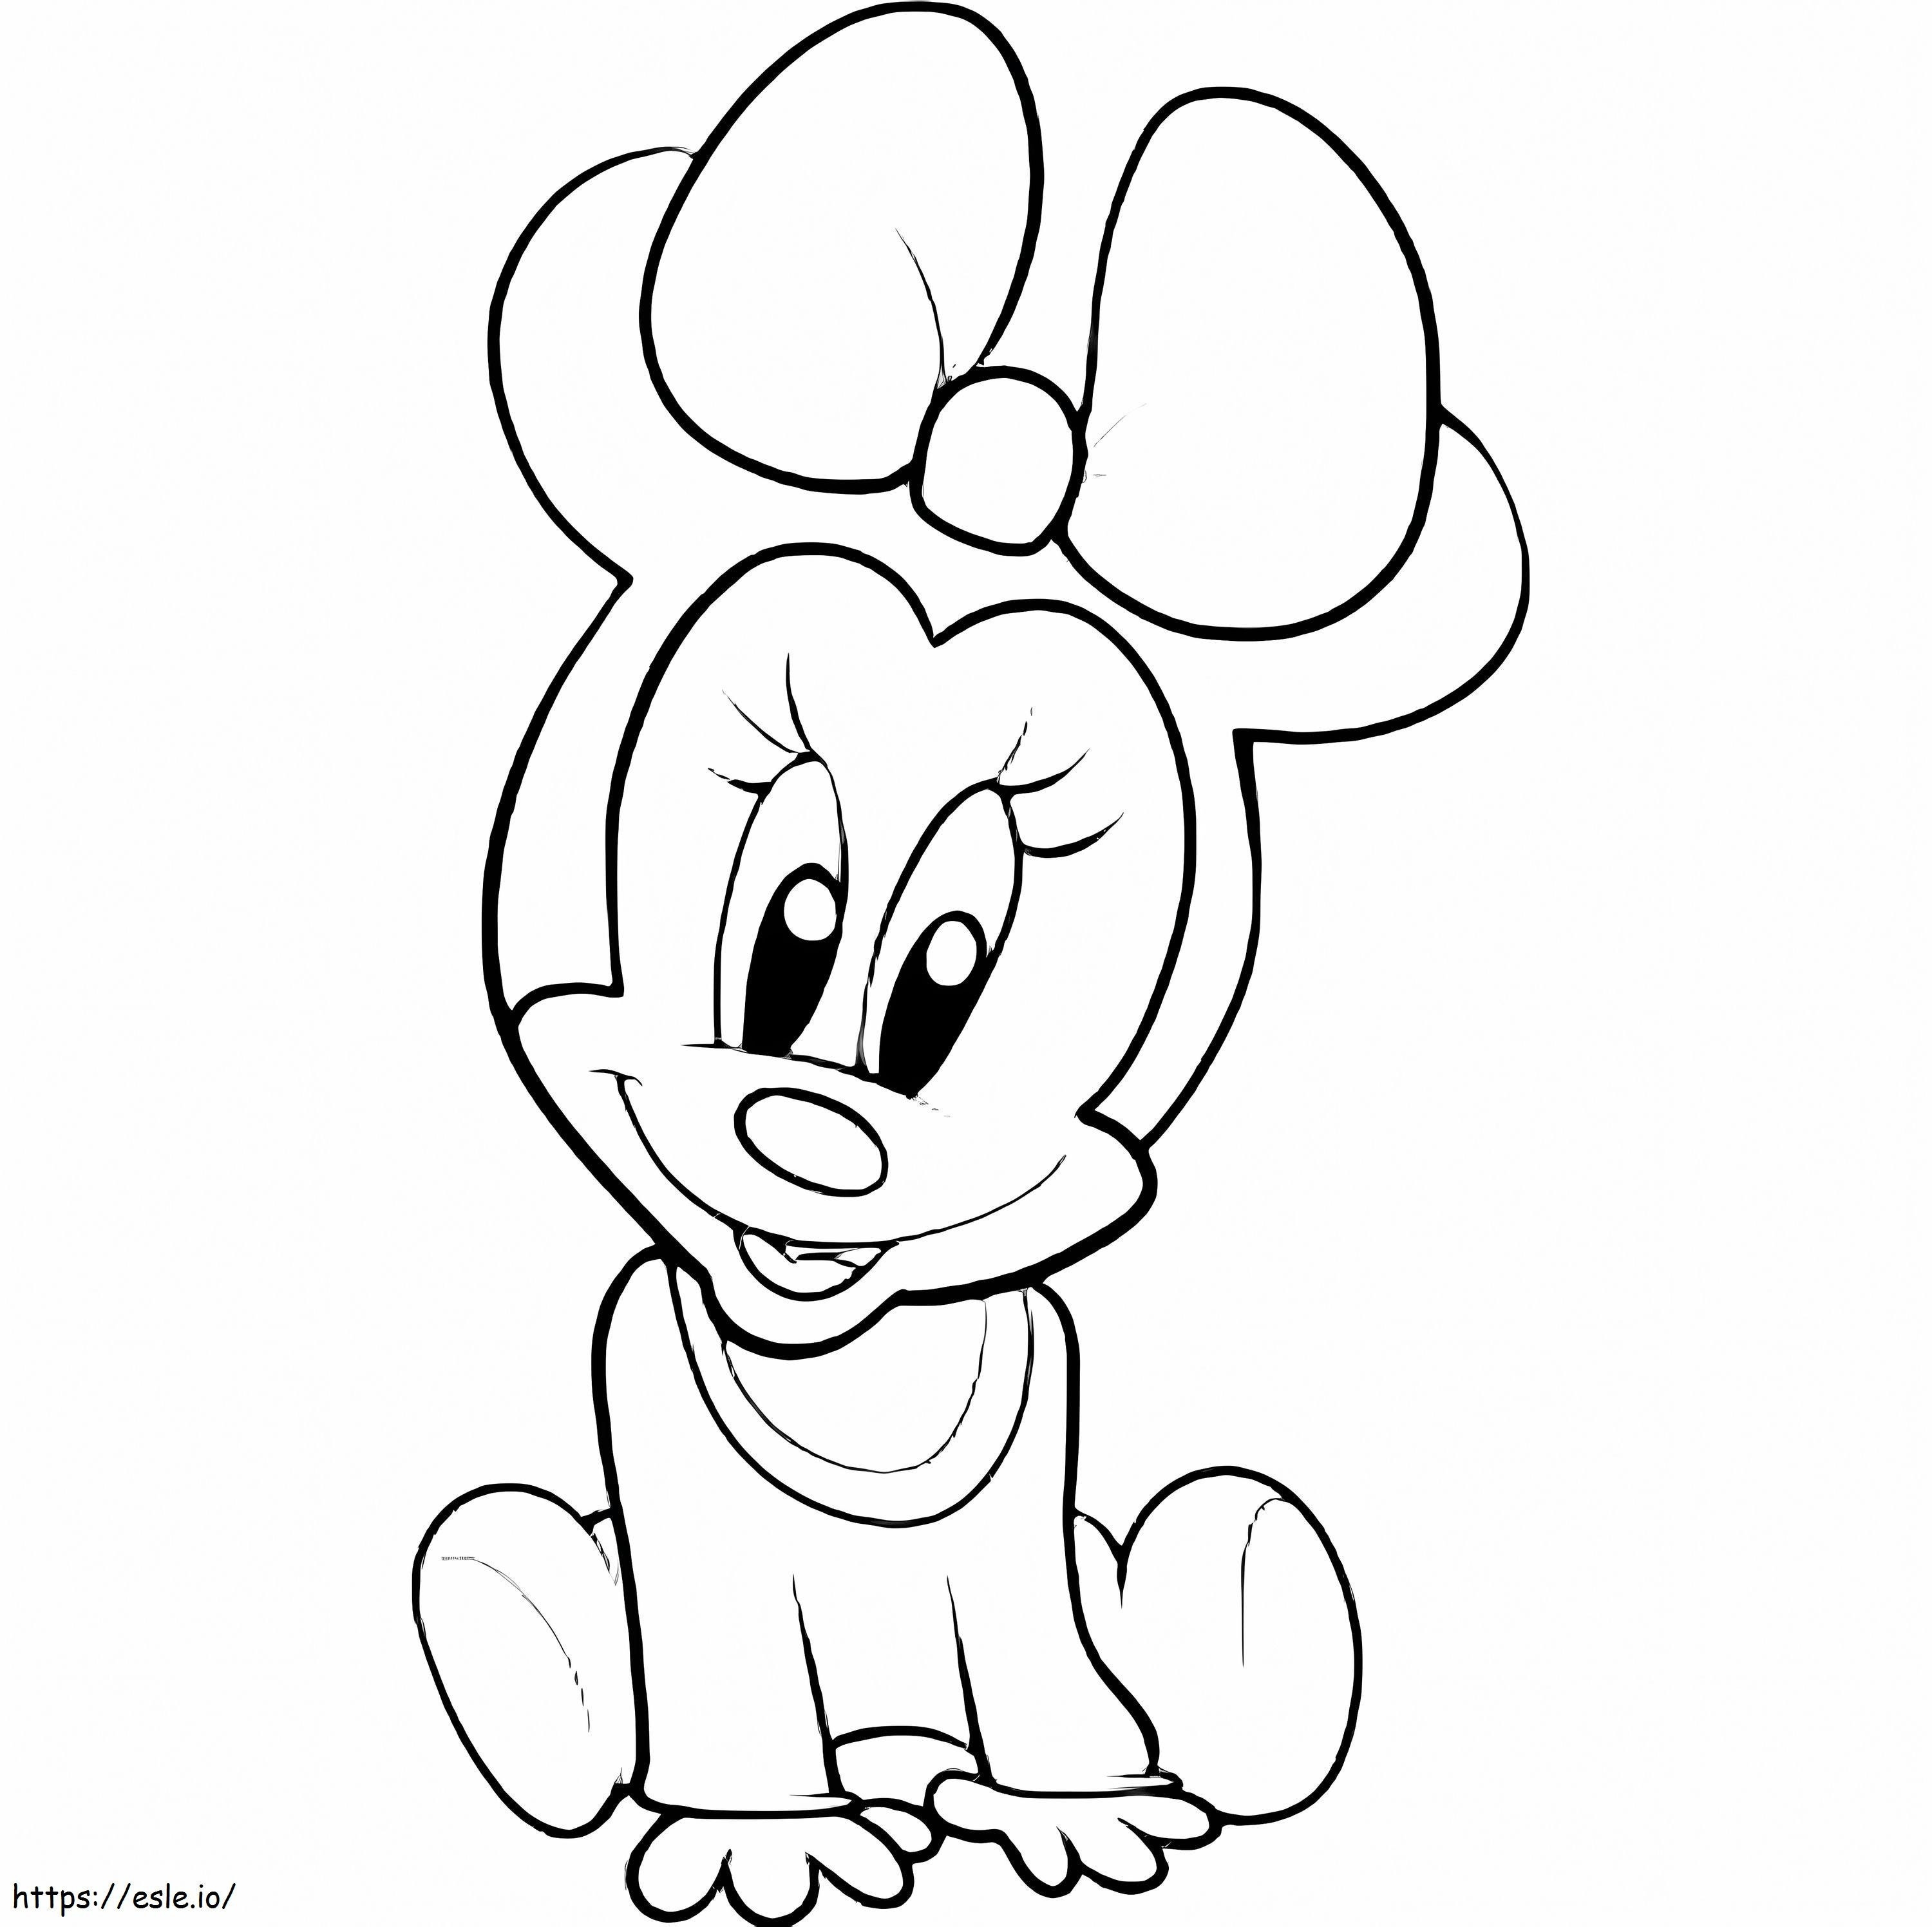 Coloriage Mignon bébé Minnie Mouse à imprimer dessin